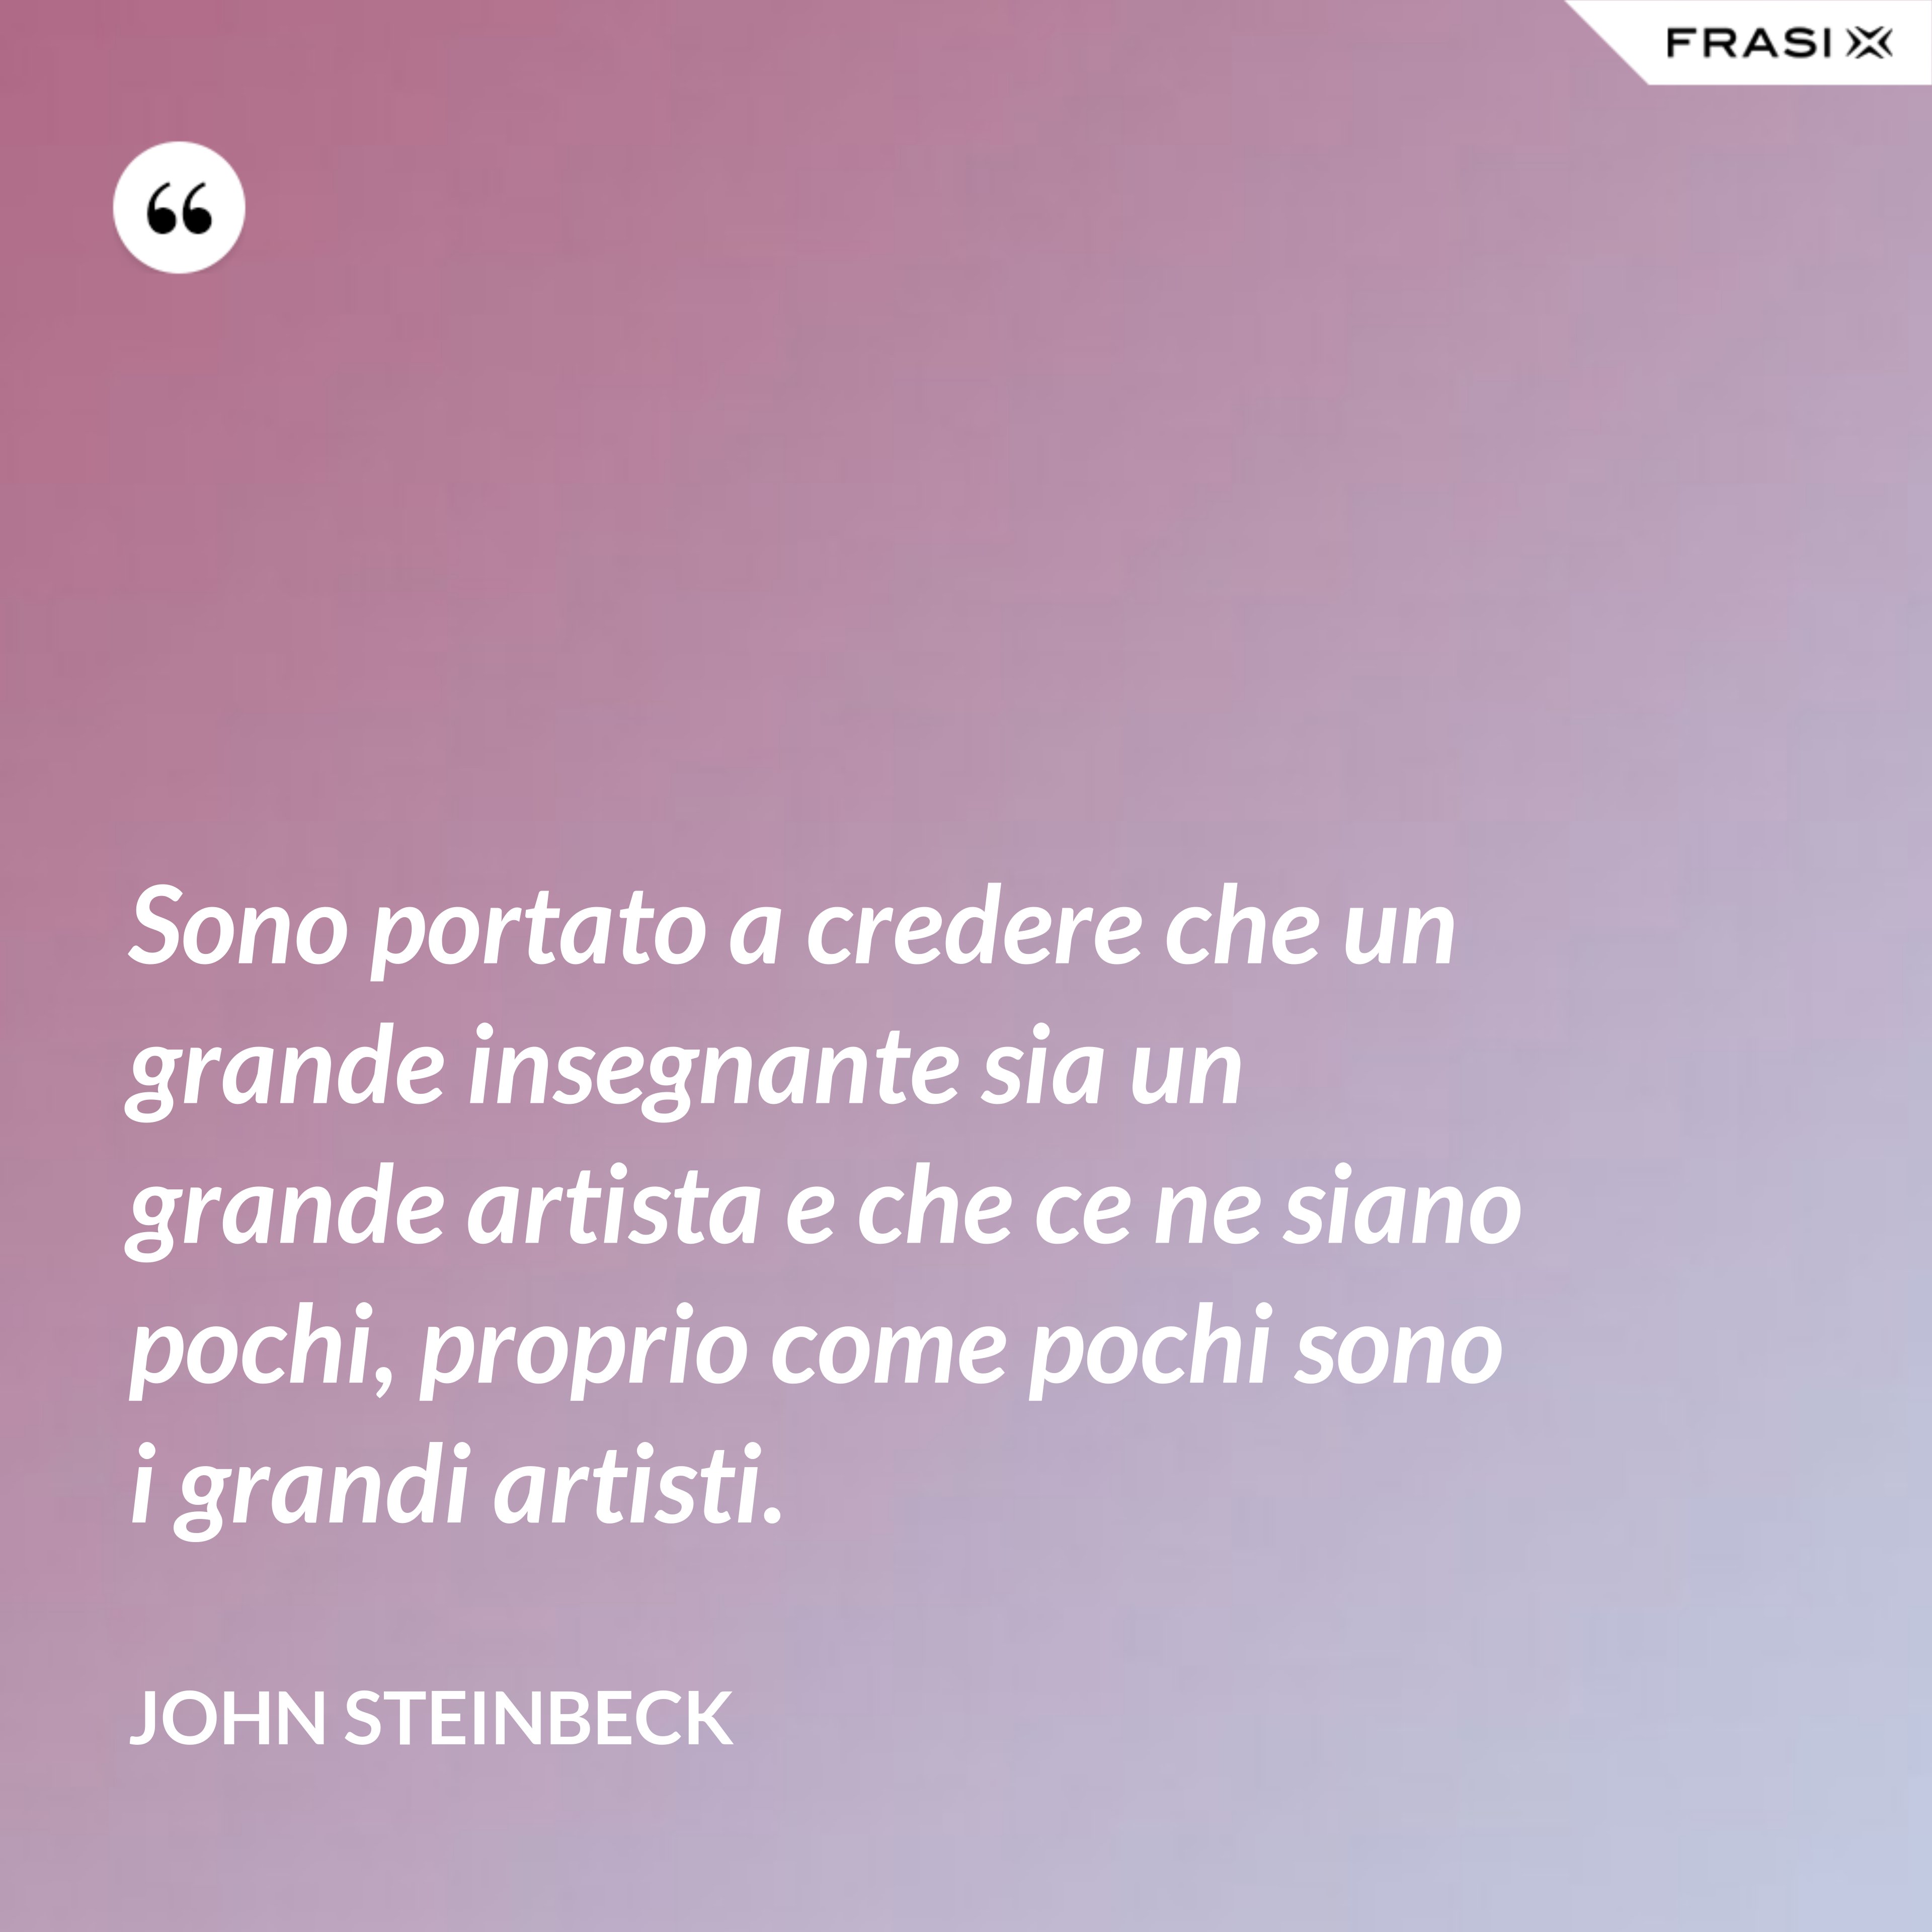 Sono portato a credere che un grande insegnante sia un grande artista e che ce ne siano pochi, proprio come pochi sono i grandi artisti. - John Steinbeck